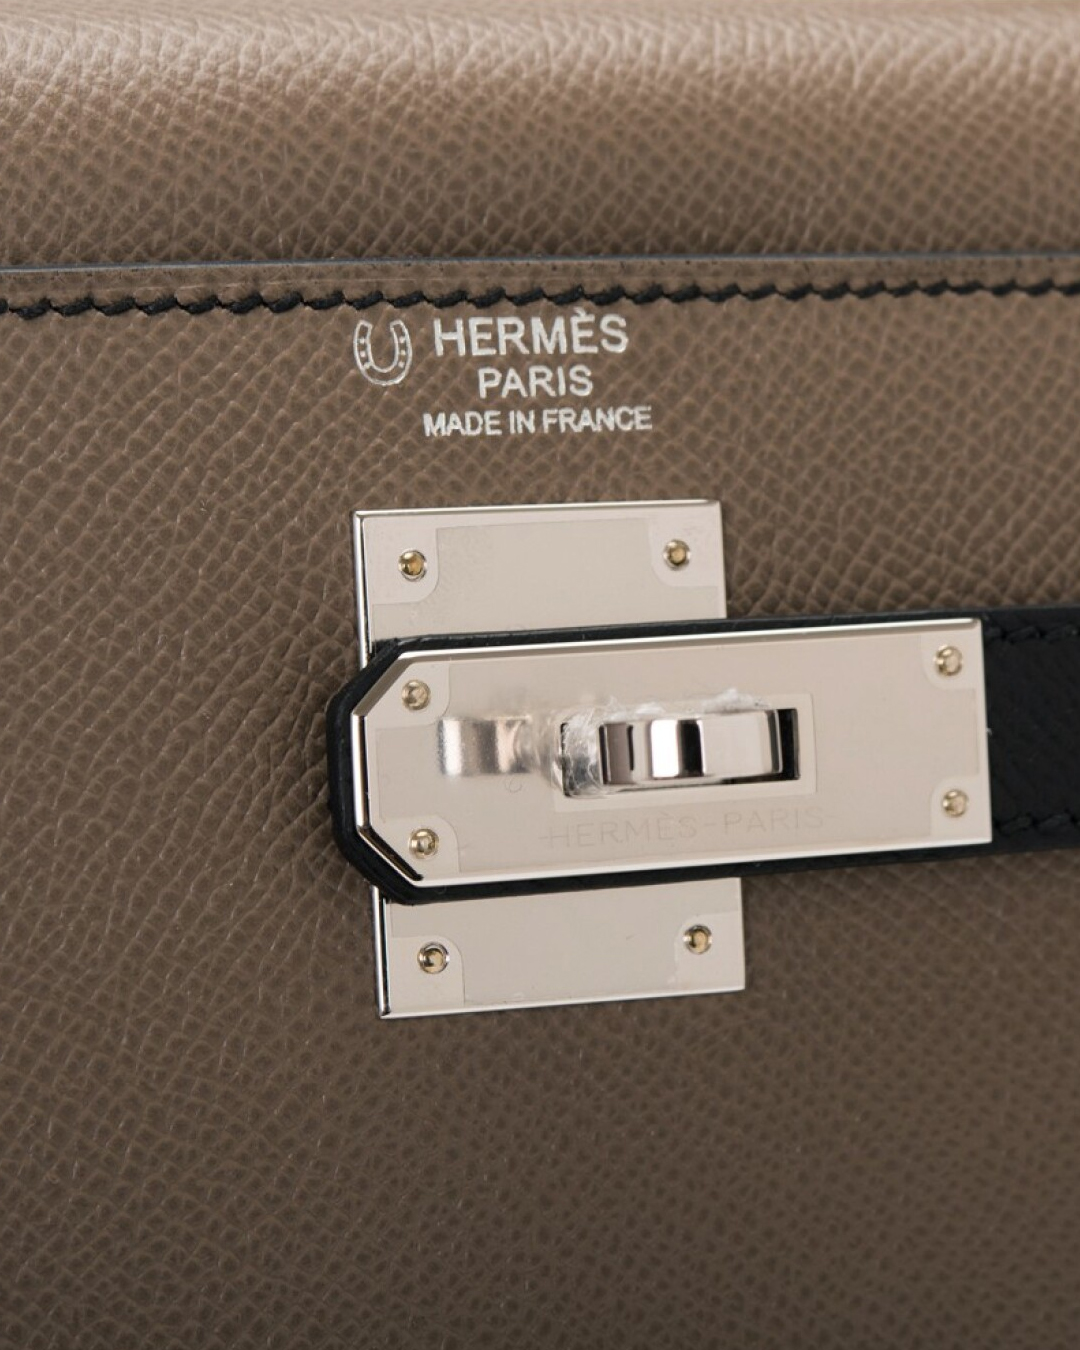 Hermès simbolo segreto ferro di cavallo ordini speciali custom or special order